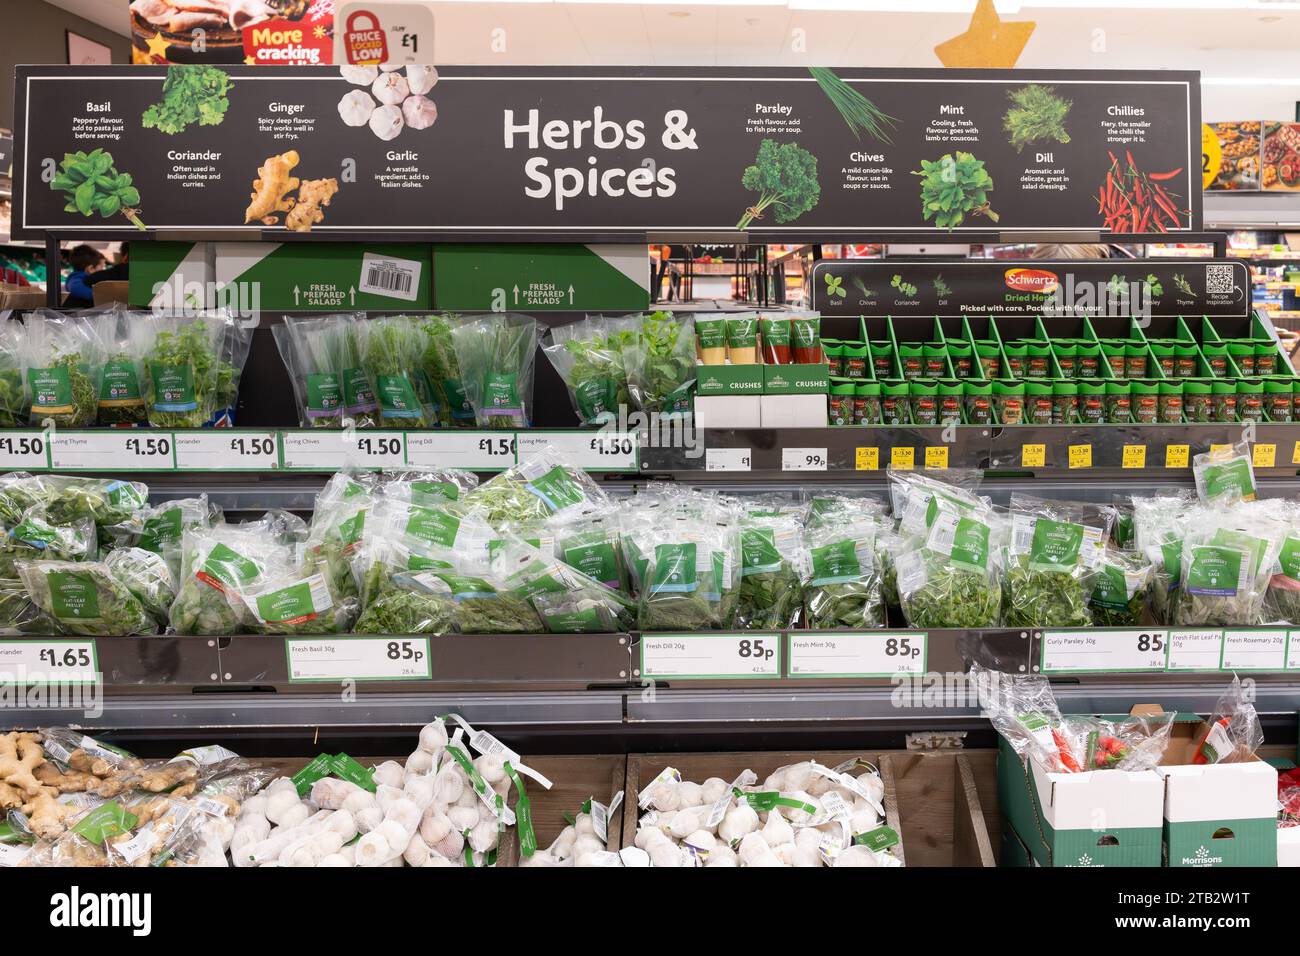 Le erbe e le spezie sono esposte con i prezzi delle erbe fresche in confezioni e vasetti e un cartello pubblicitario sopra in un supermercato Morrisons, Regno Unito Foto Stock